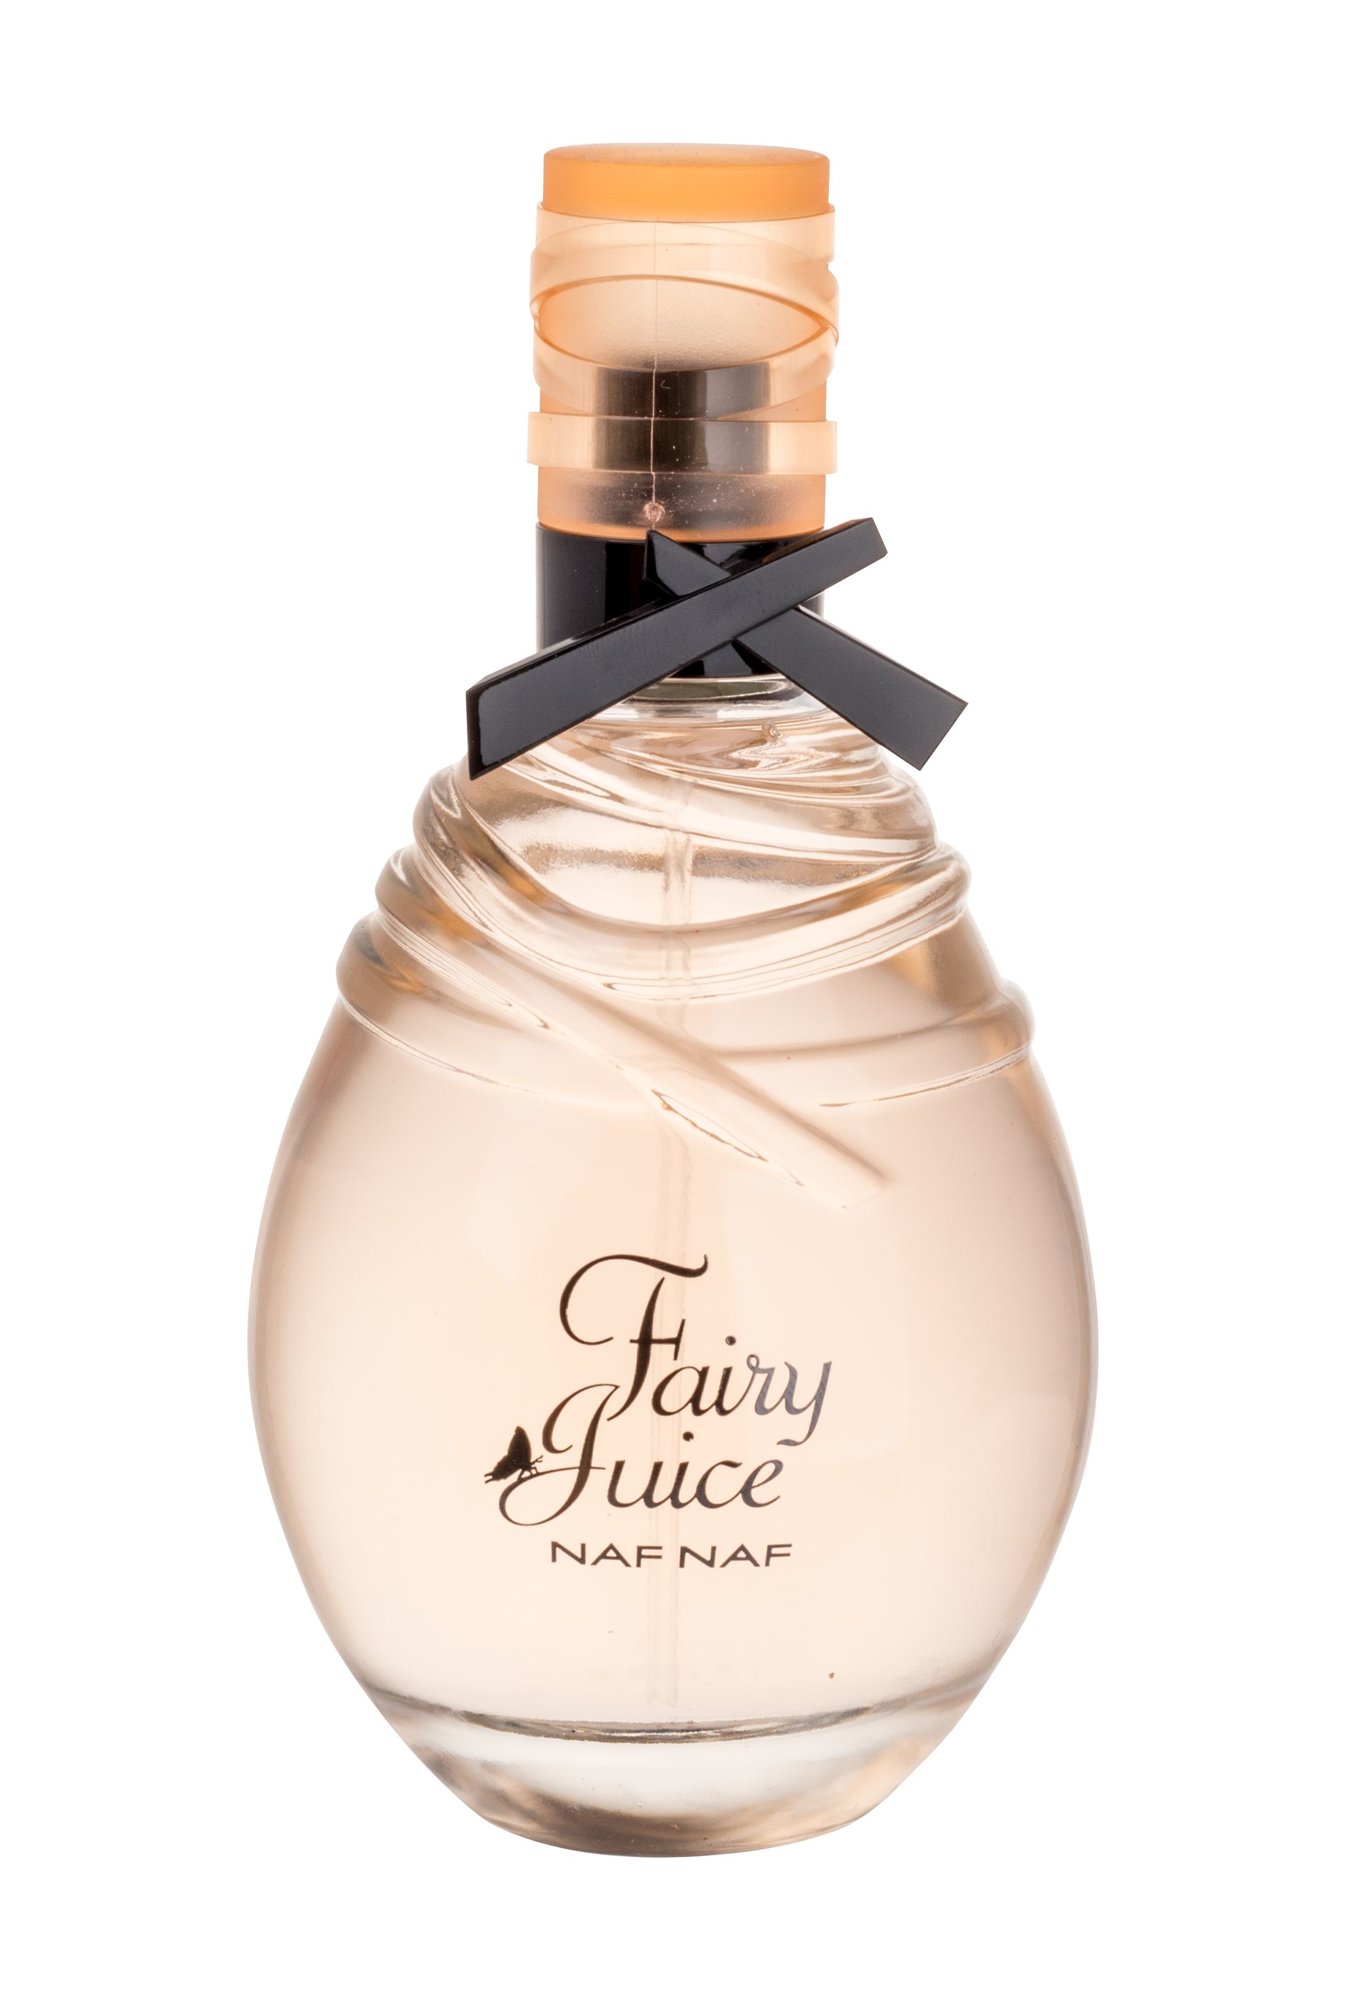 NAFNAF Fairy Juice